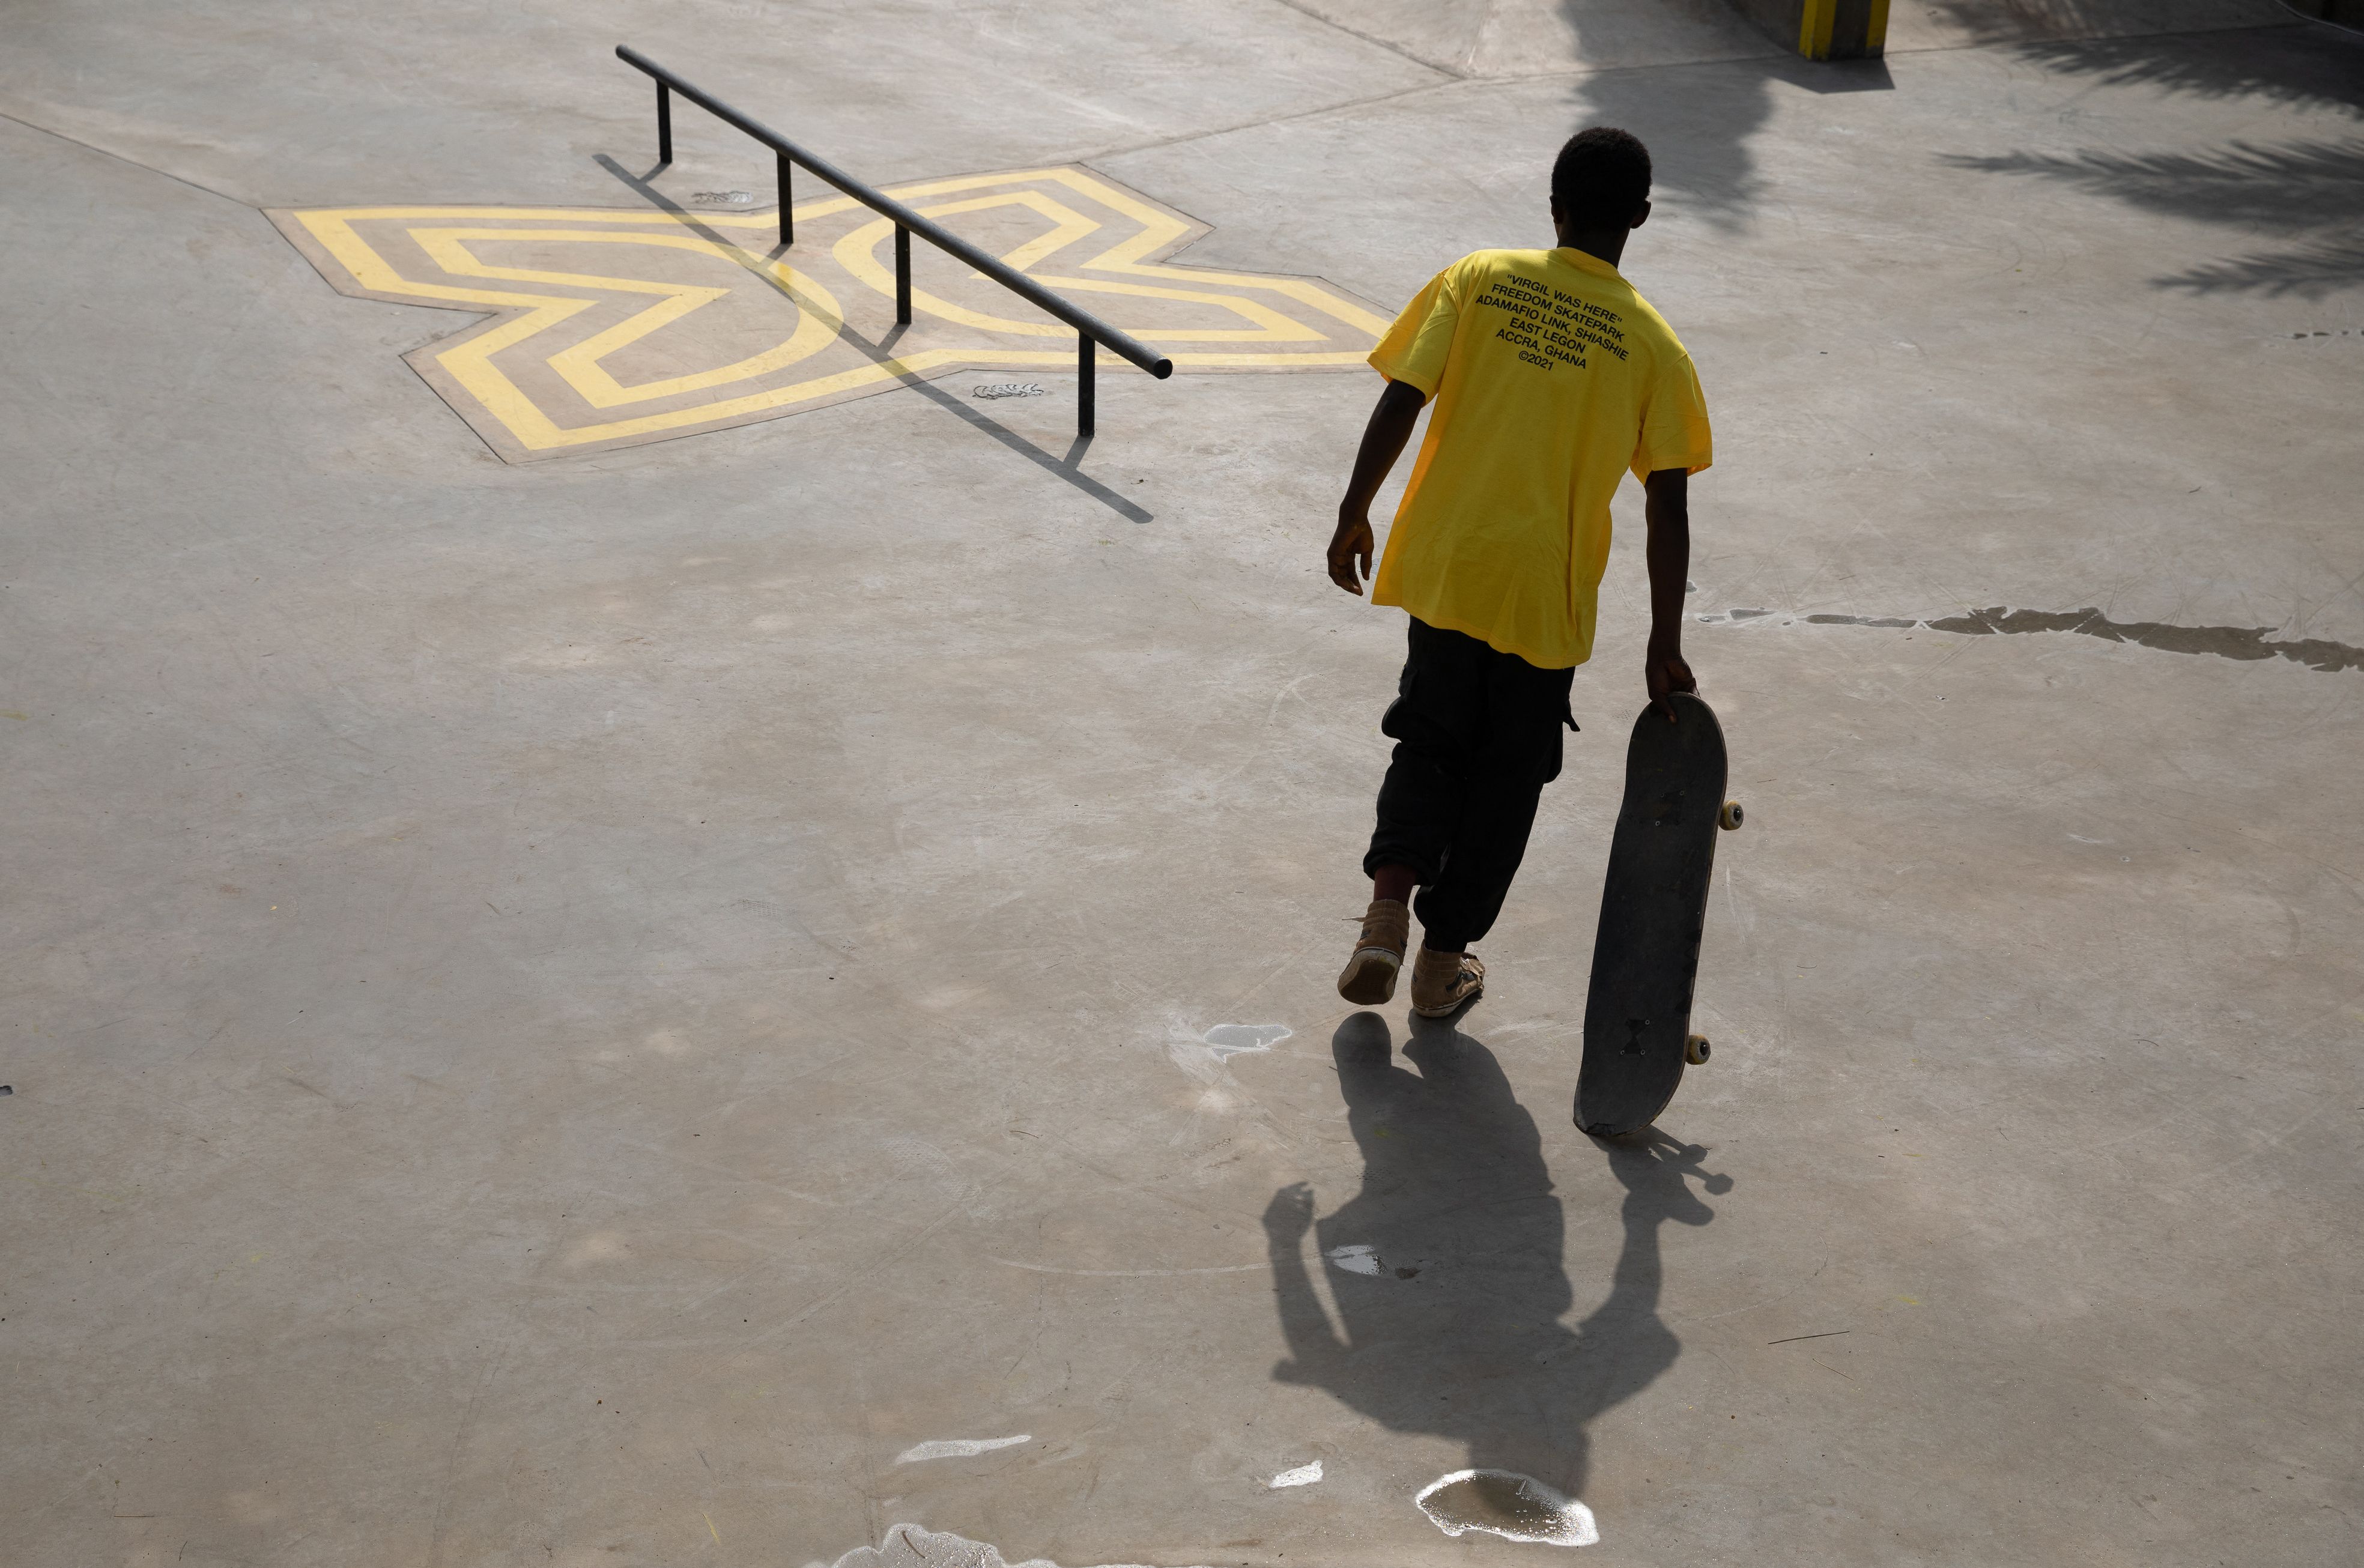 First Skatepark In Ghana Will Honor Virgil Abloh, News